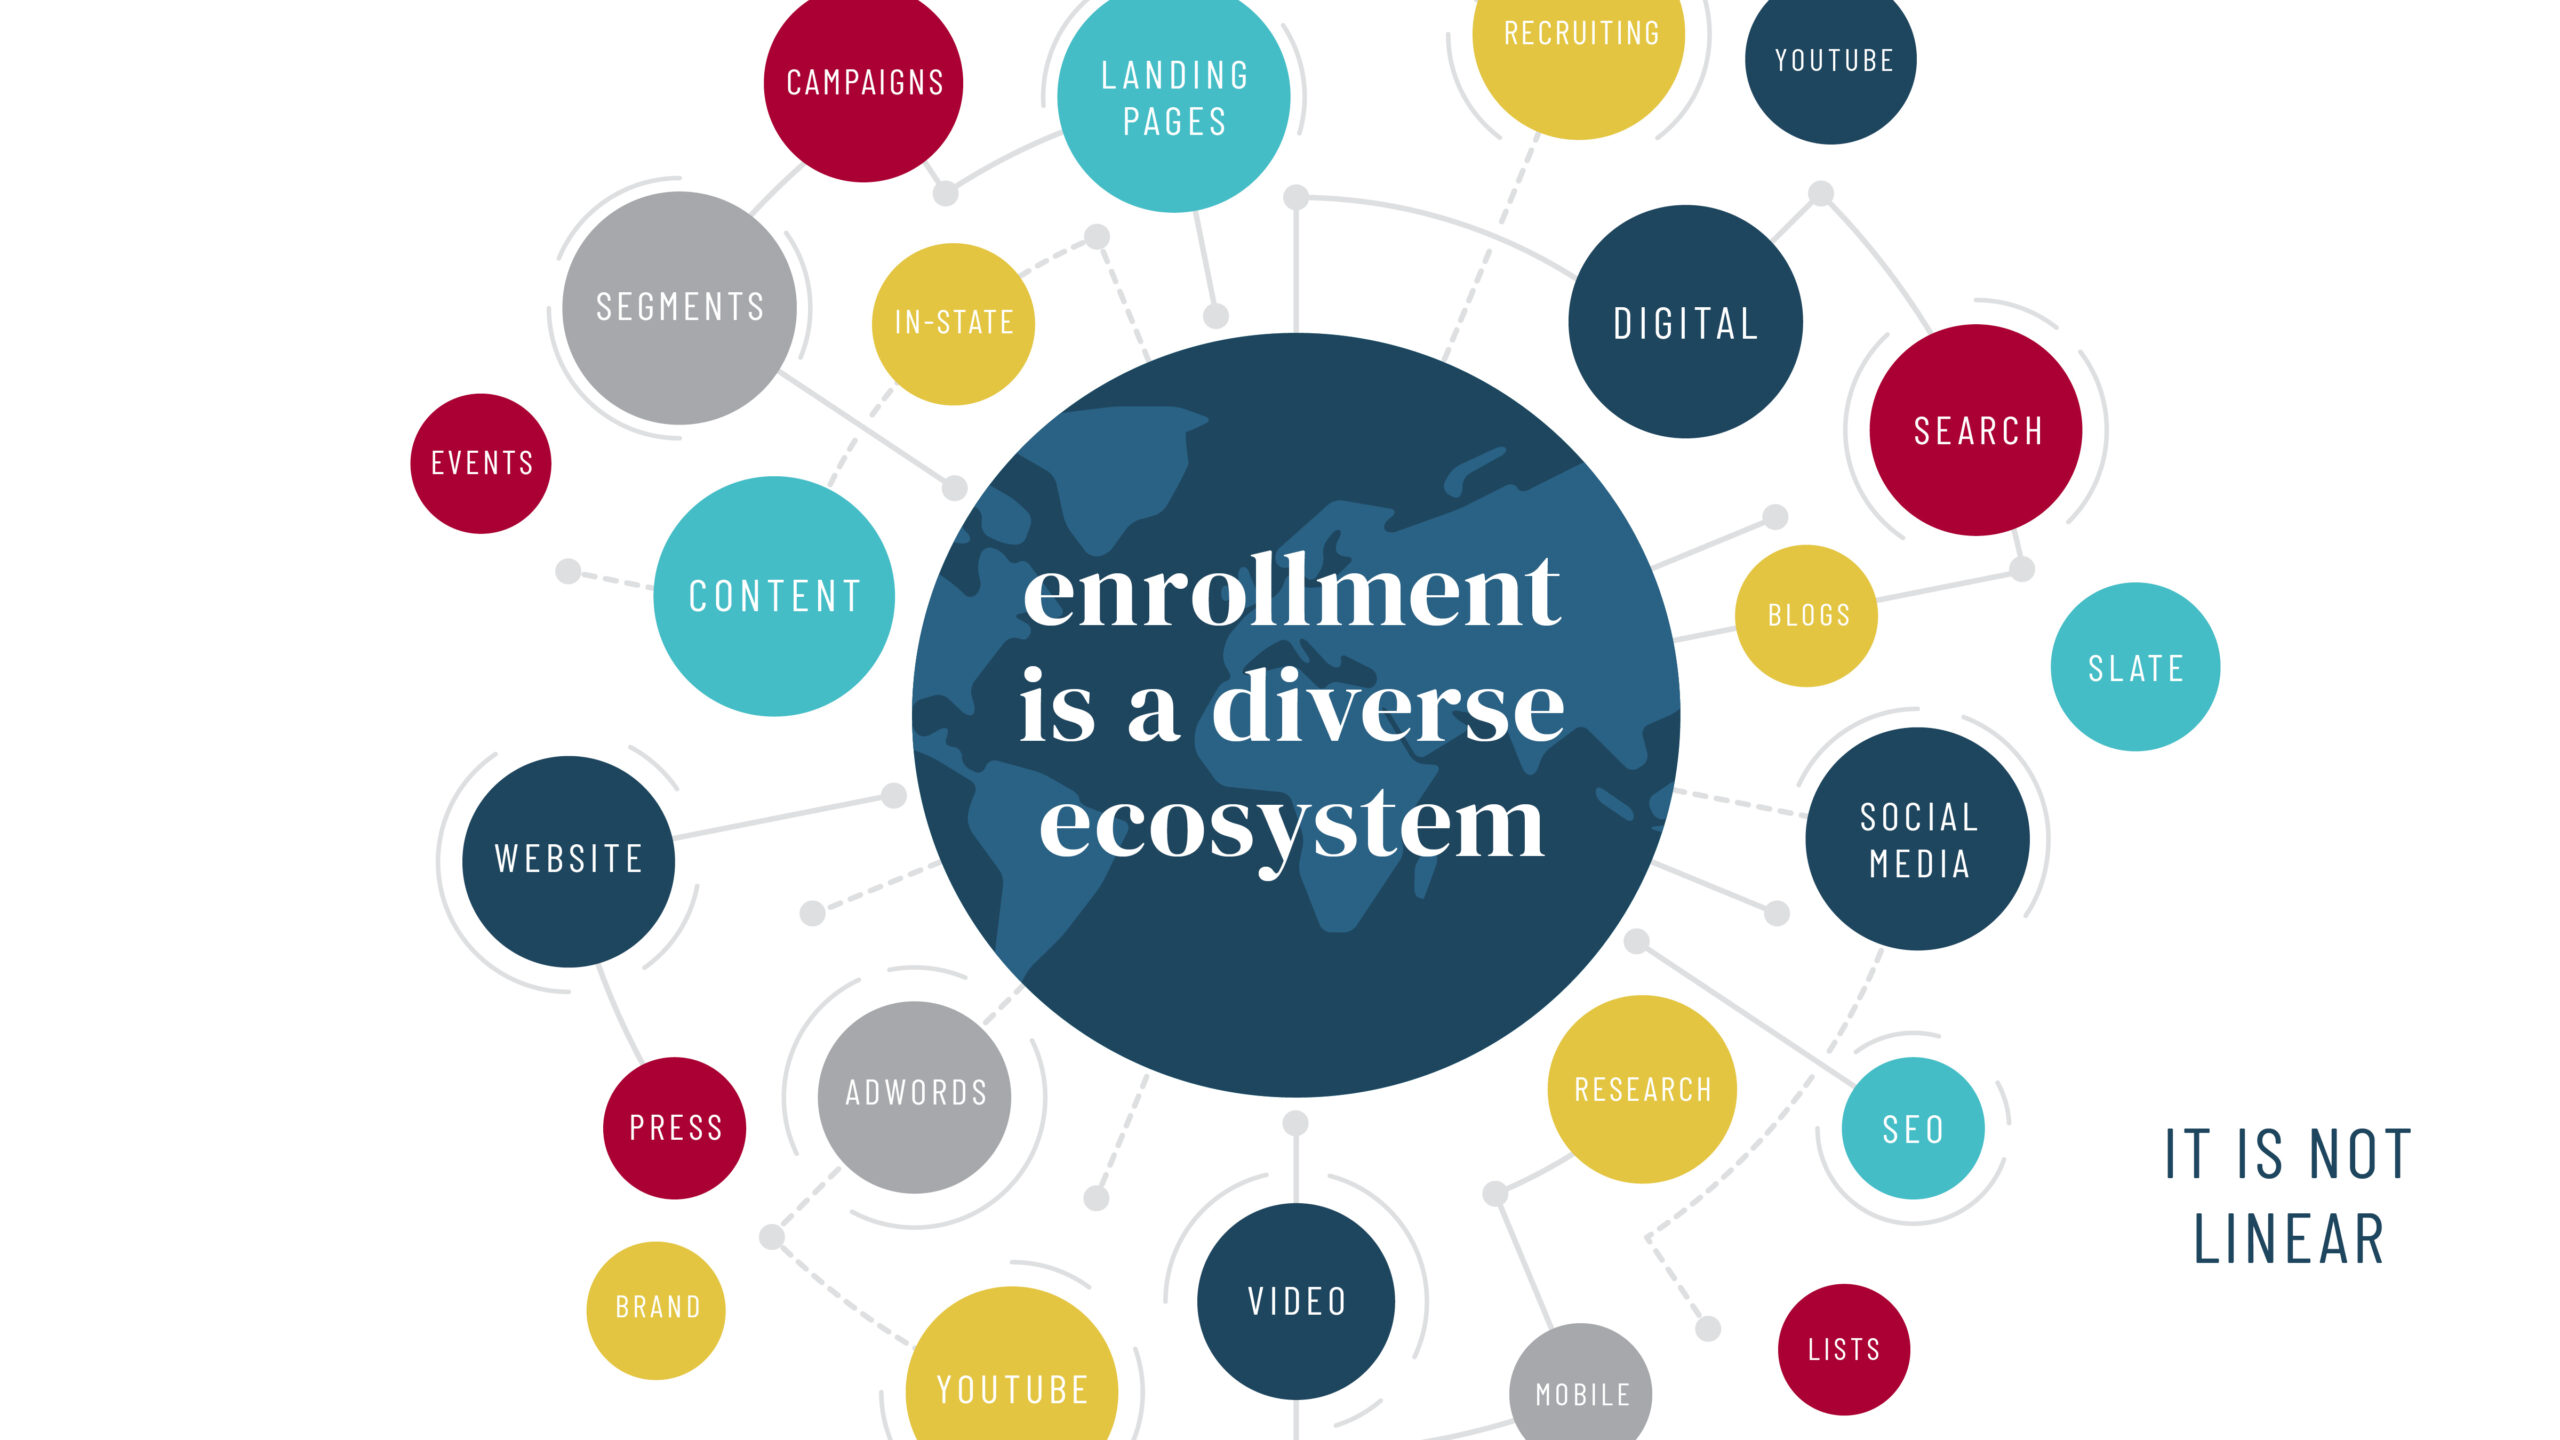 Enrollment is a diverse ecosystem.